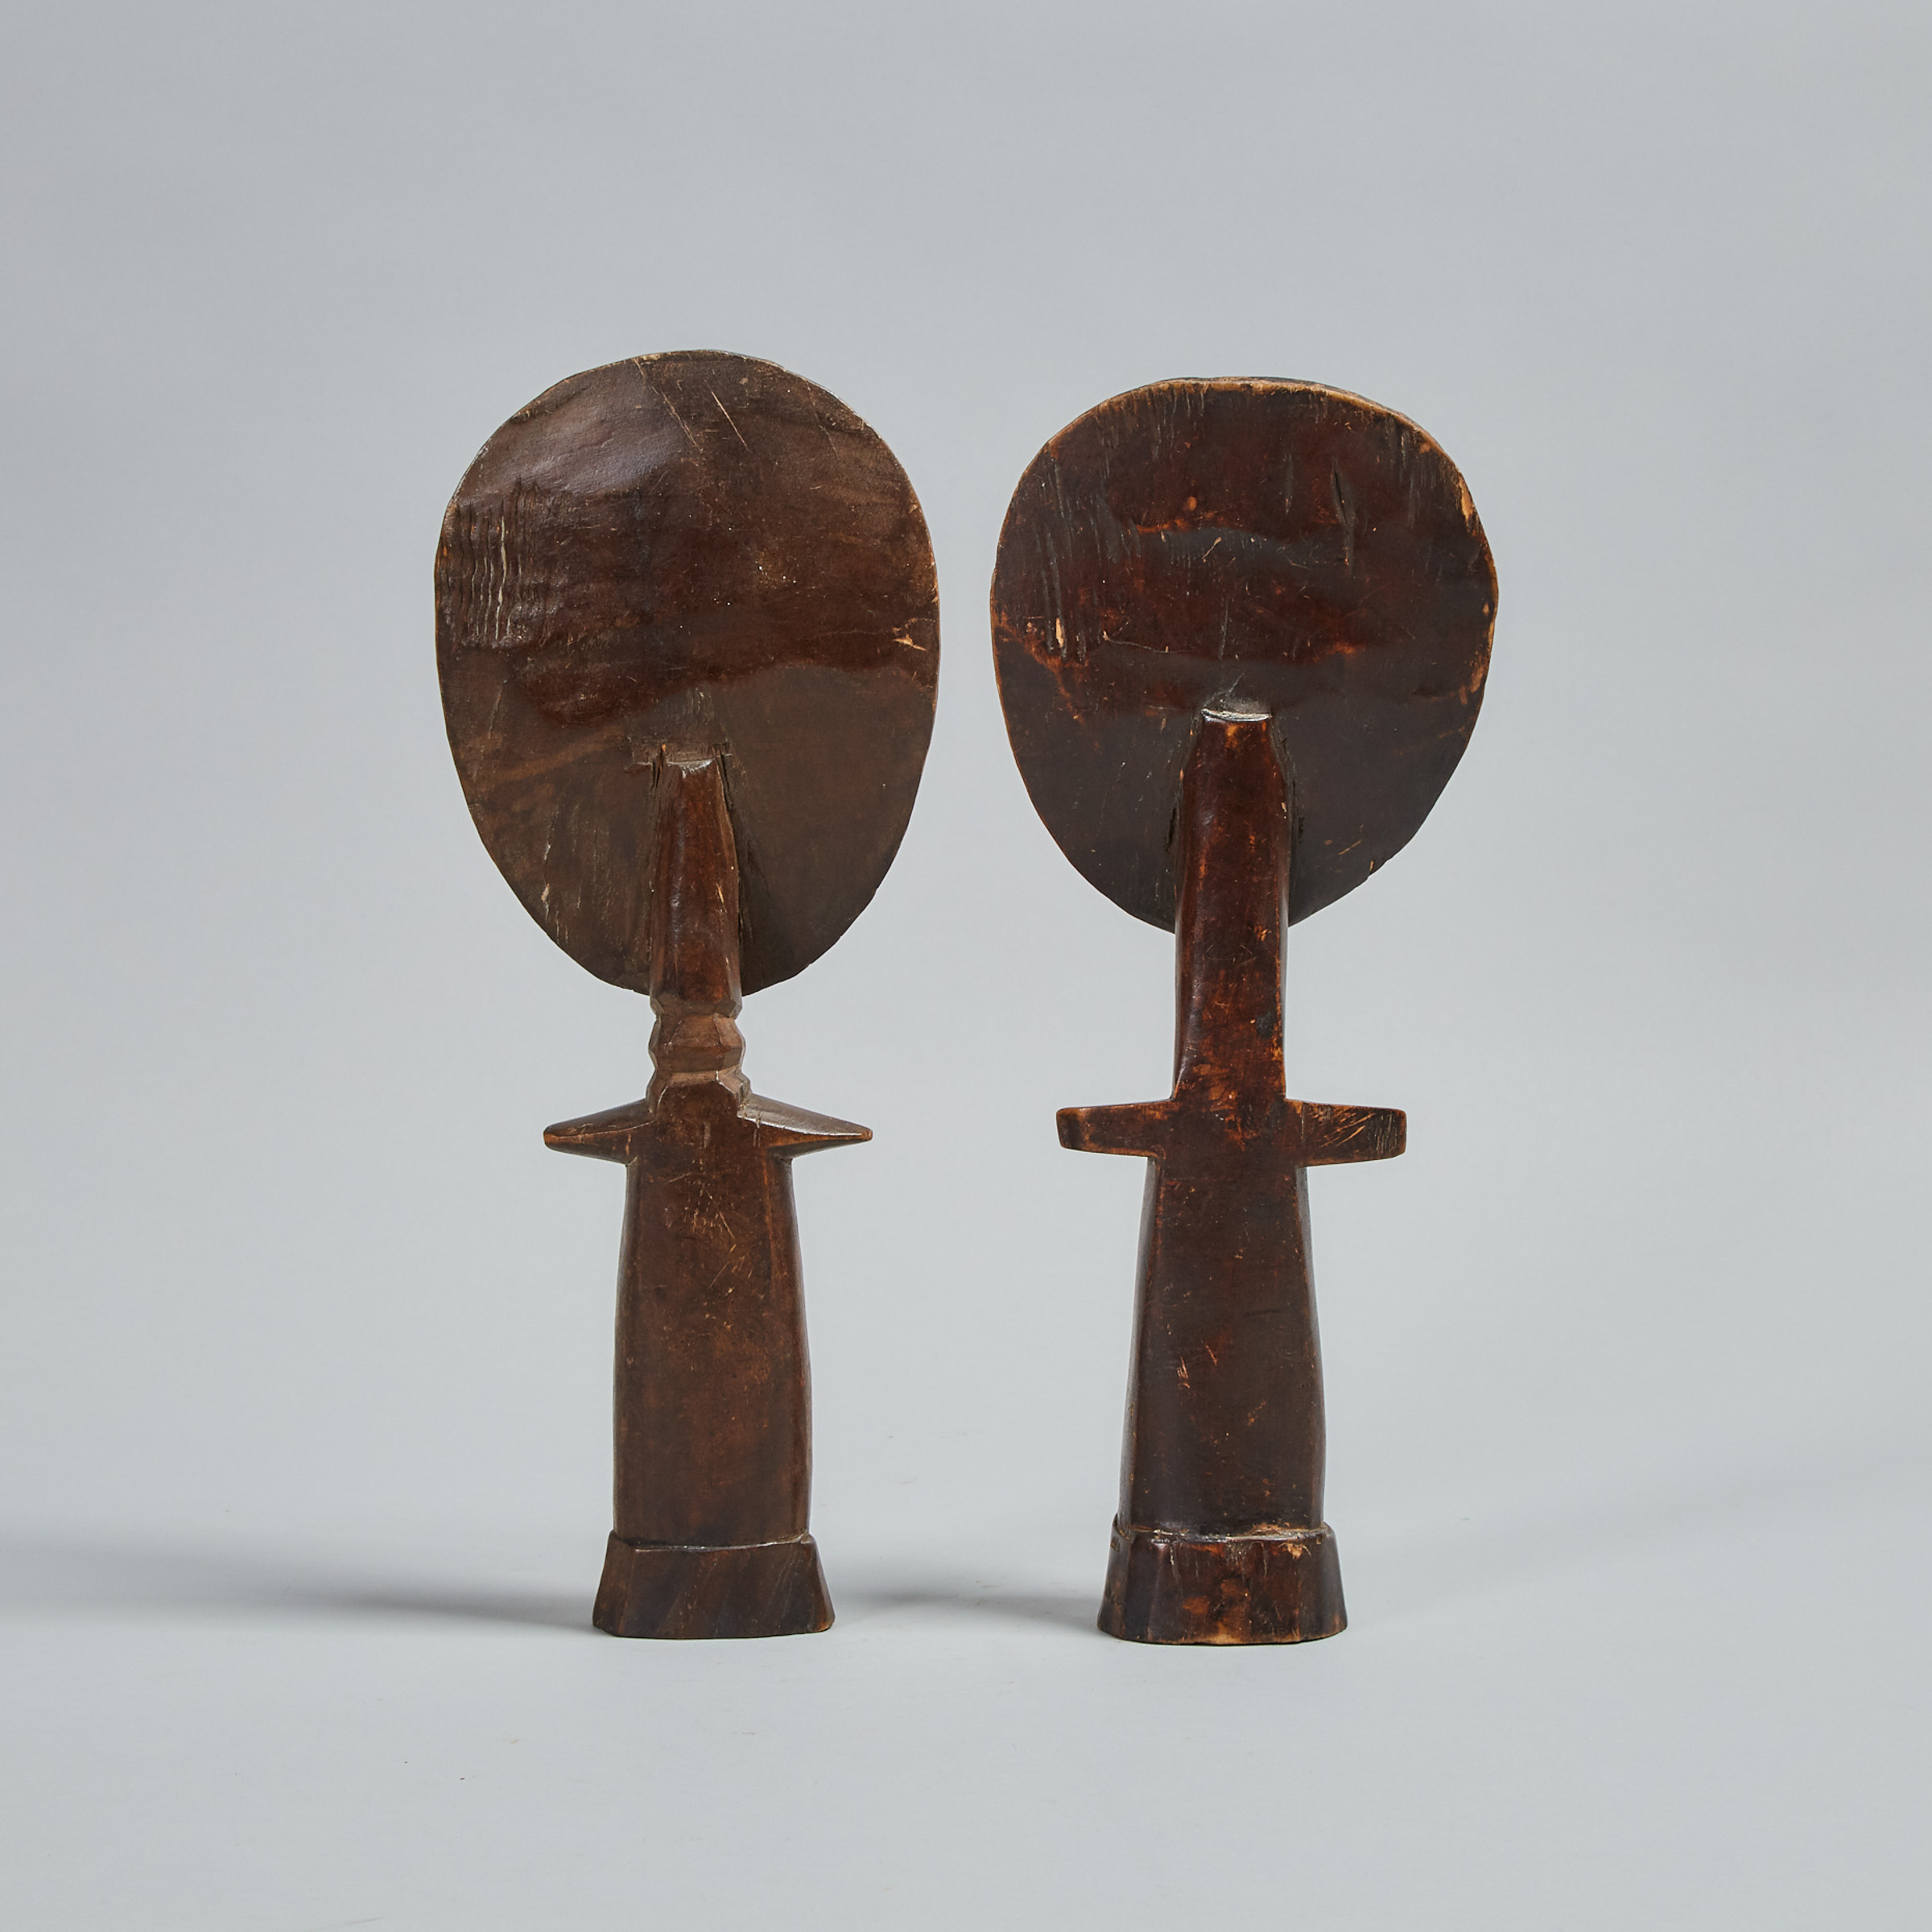 Two Ashanti Akuaba (fertiliy) Dolls, Ghana, West Africa